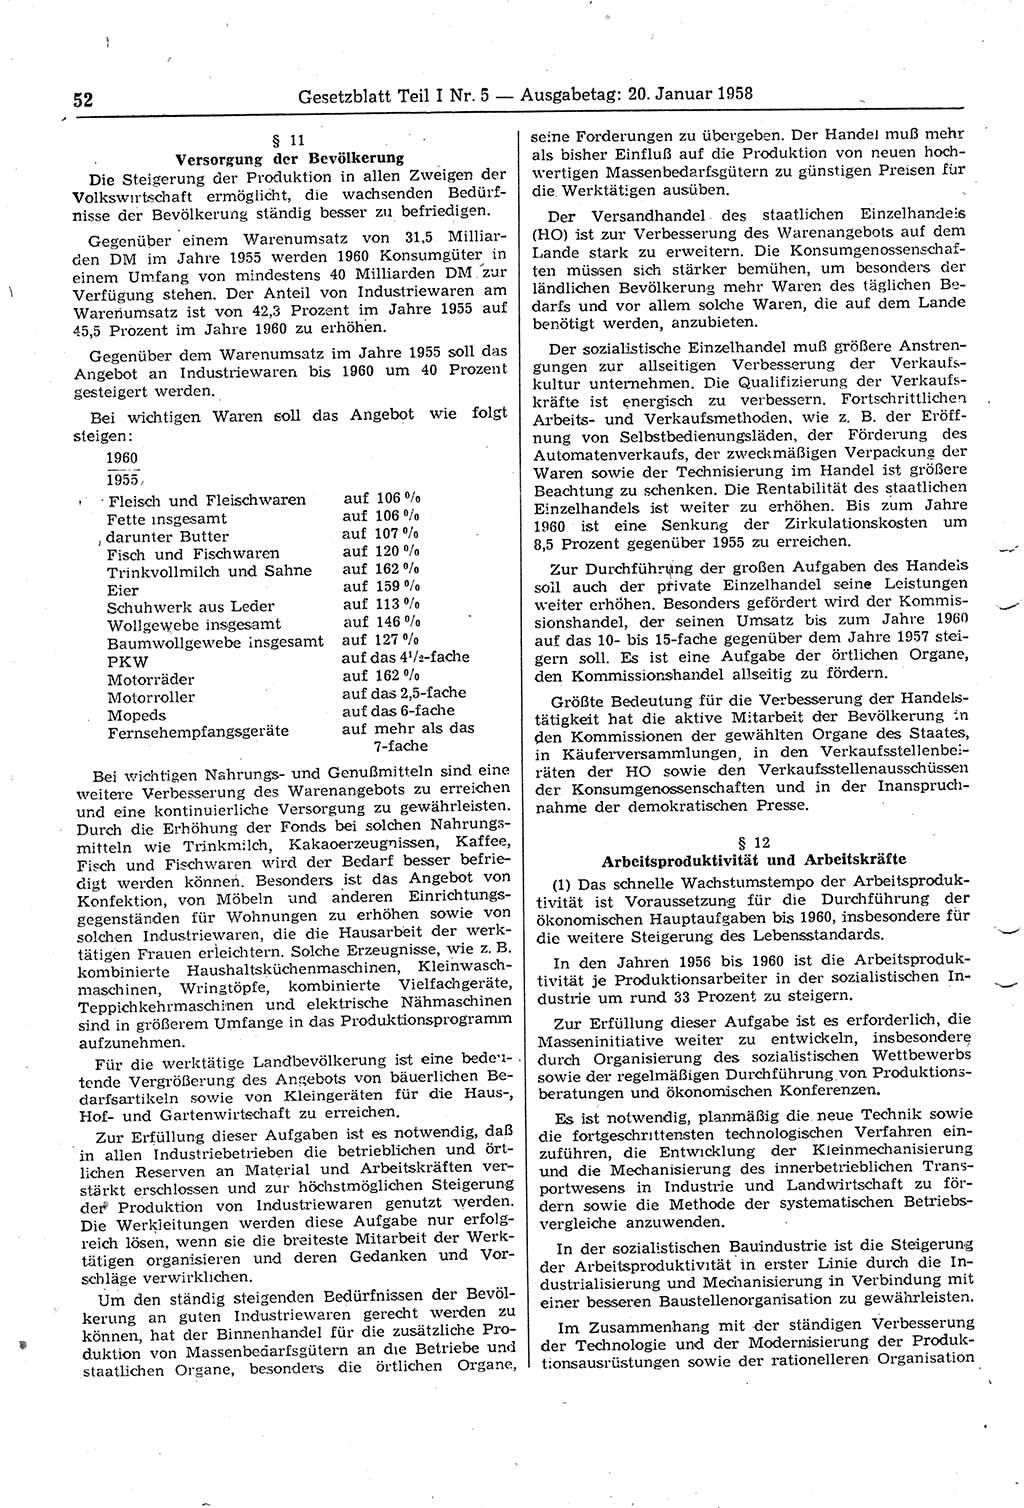 Gesetzblatt (GBl.) der Deutschen Demokratischen Republik (DDR) Teil Ⅰ 1958, Seite 52 (GBl. DDR Ⅰ 1958, S. 52)